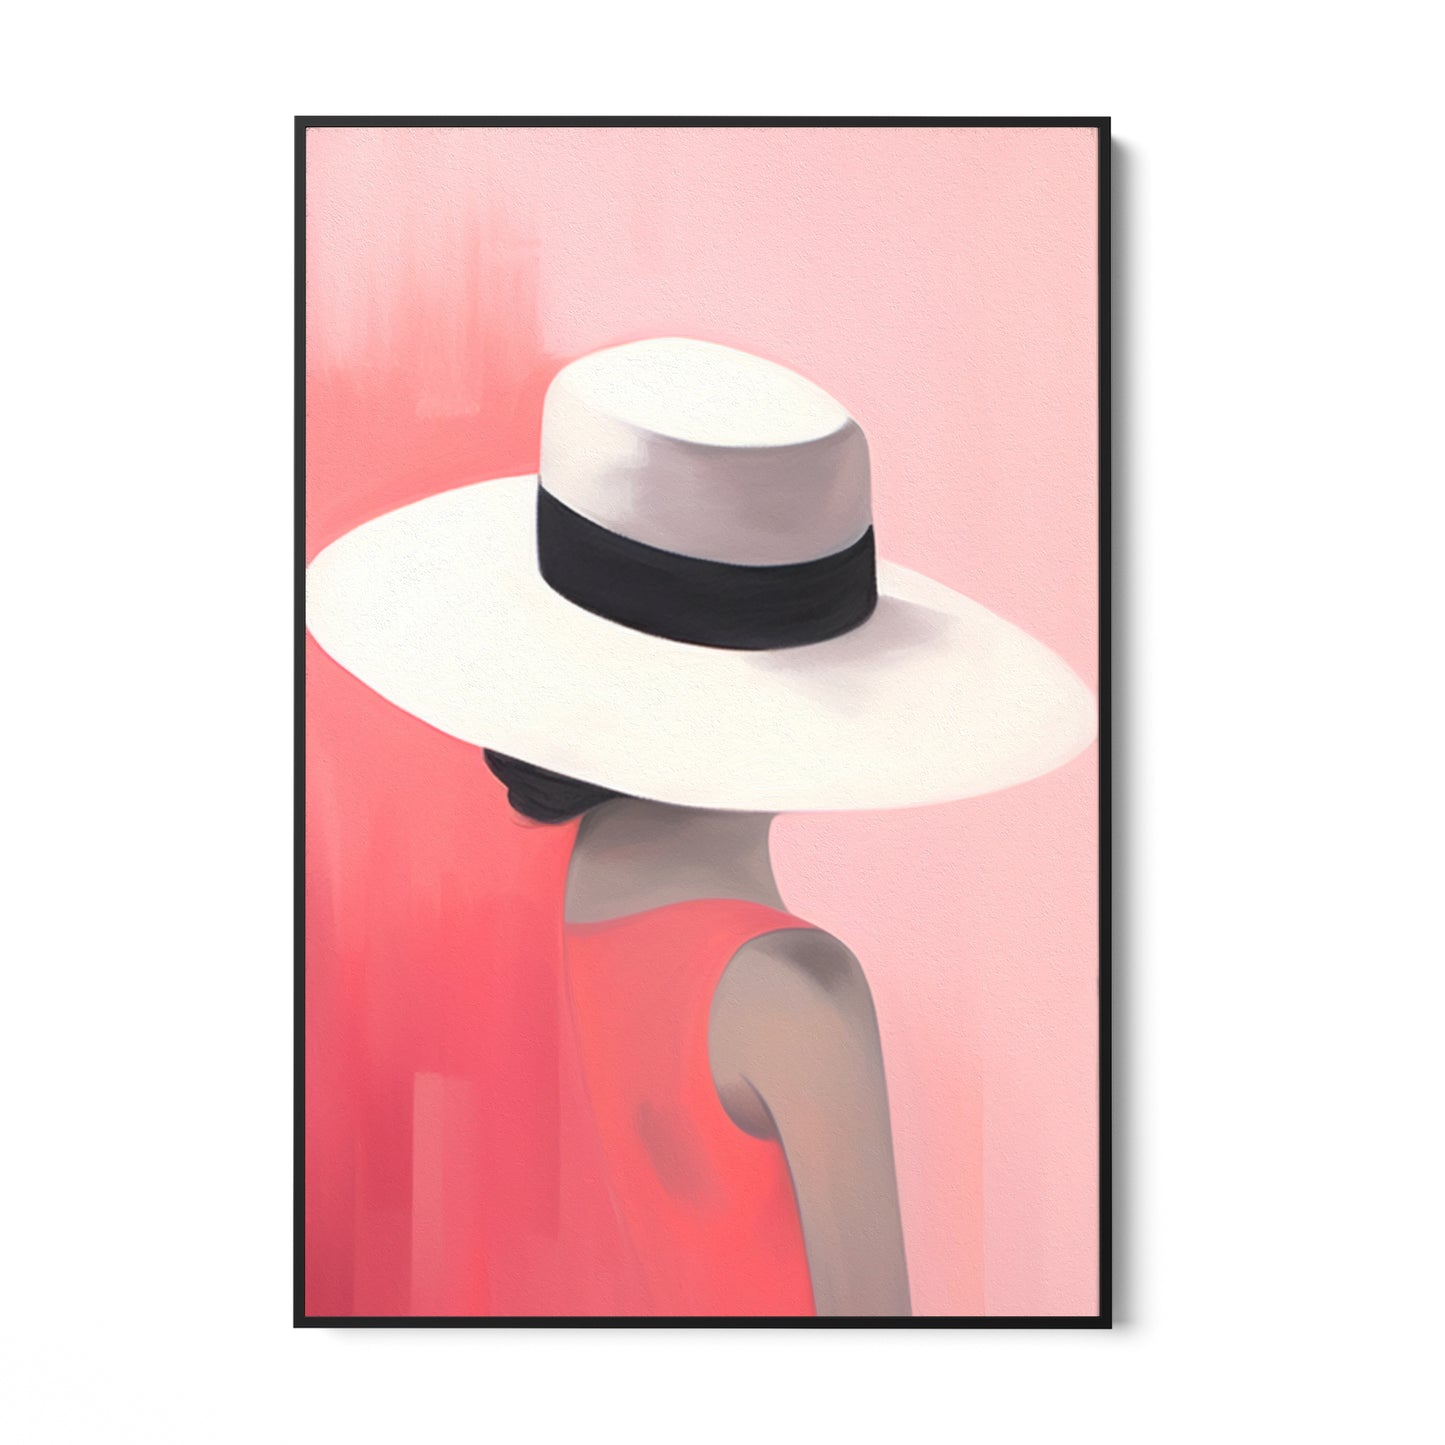 Elegancia a kalap alatt